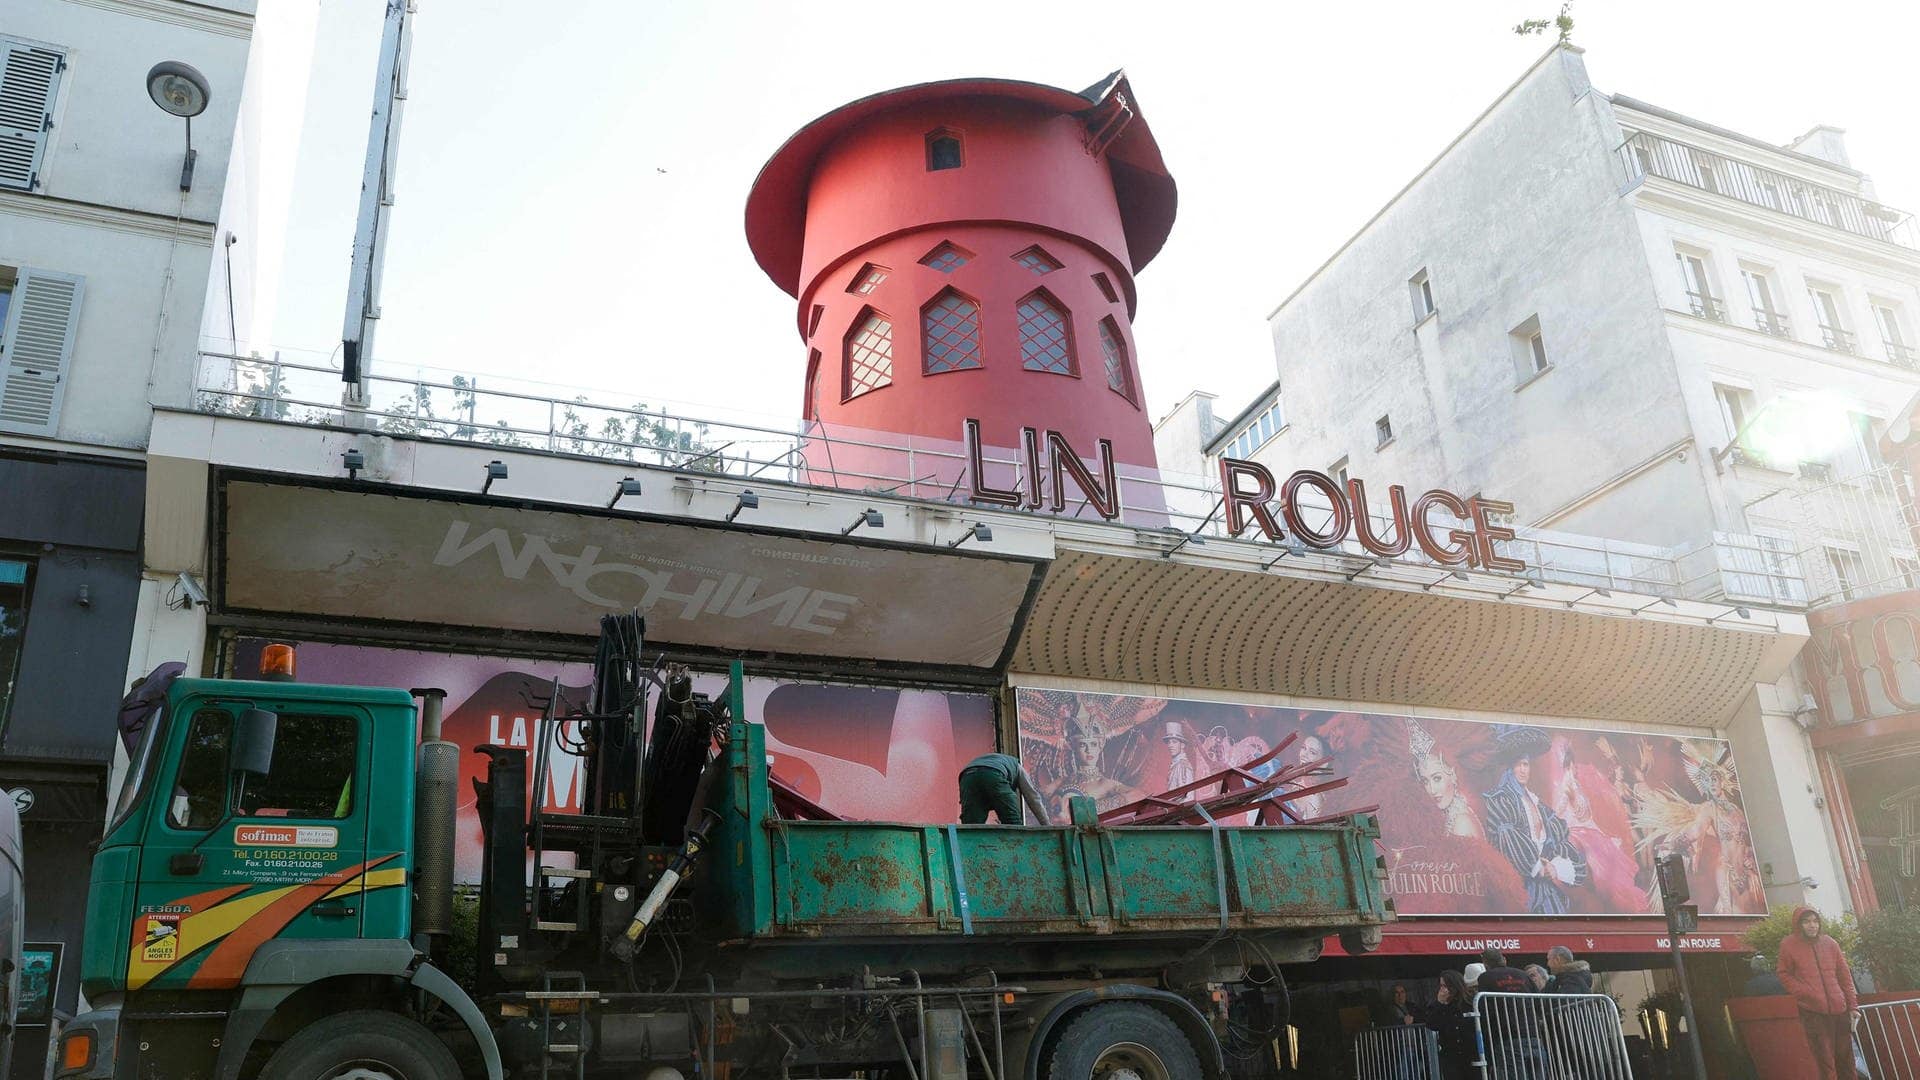 Arbeiter sichern den Bereich vor dem Kabarett, nachdem die Flügel des Windrads des Moulin Rouge abgestürzt sind.